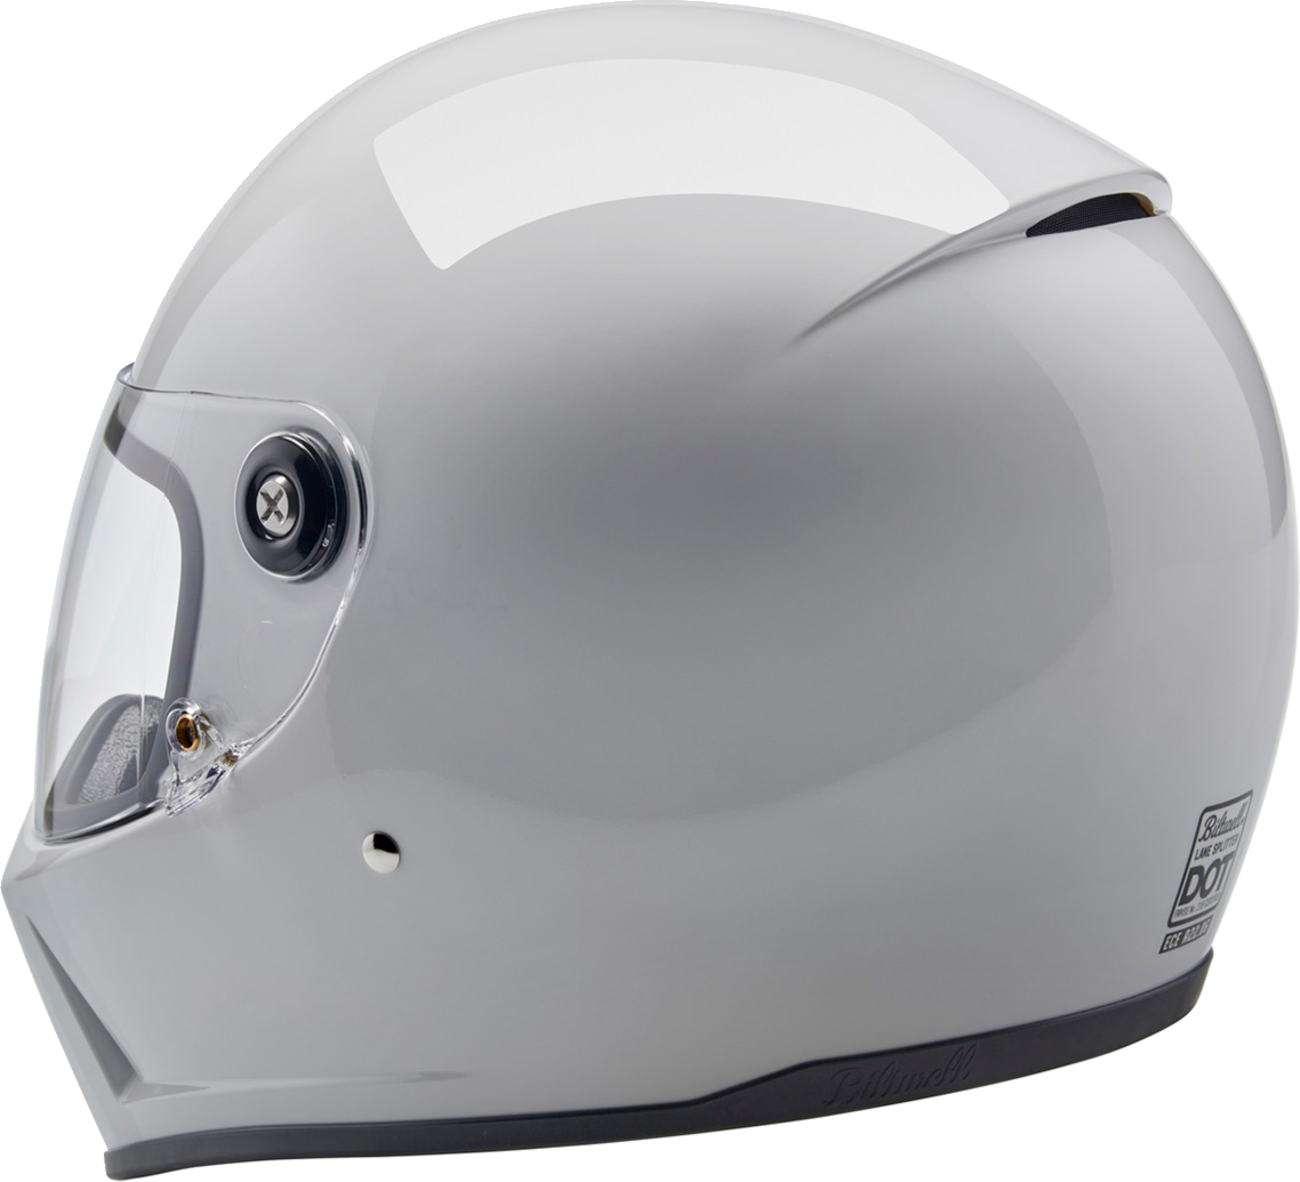 BILTWELL Lane Splitter Helmet - Gloss White - XL 1004-104-505